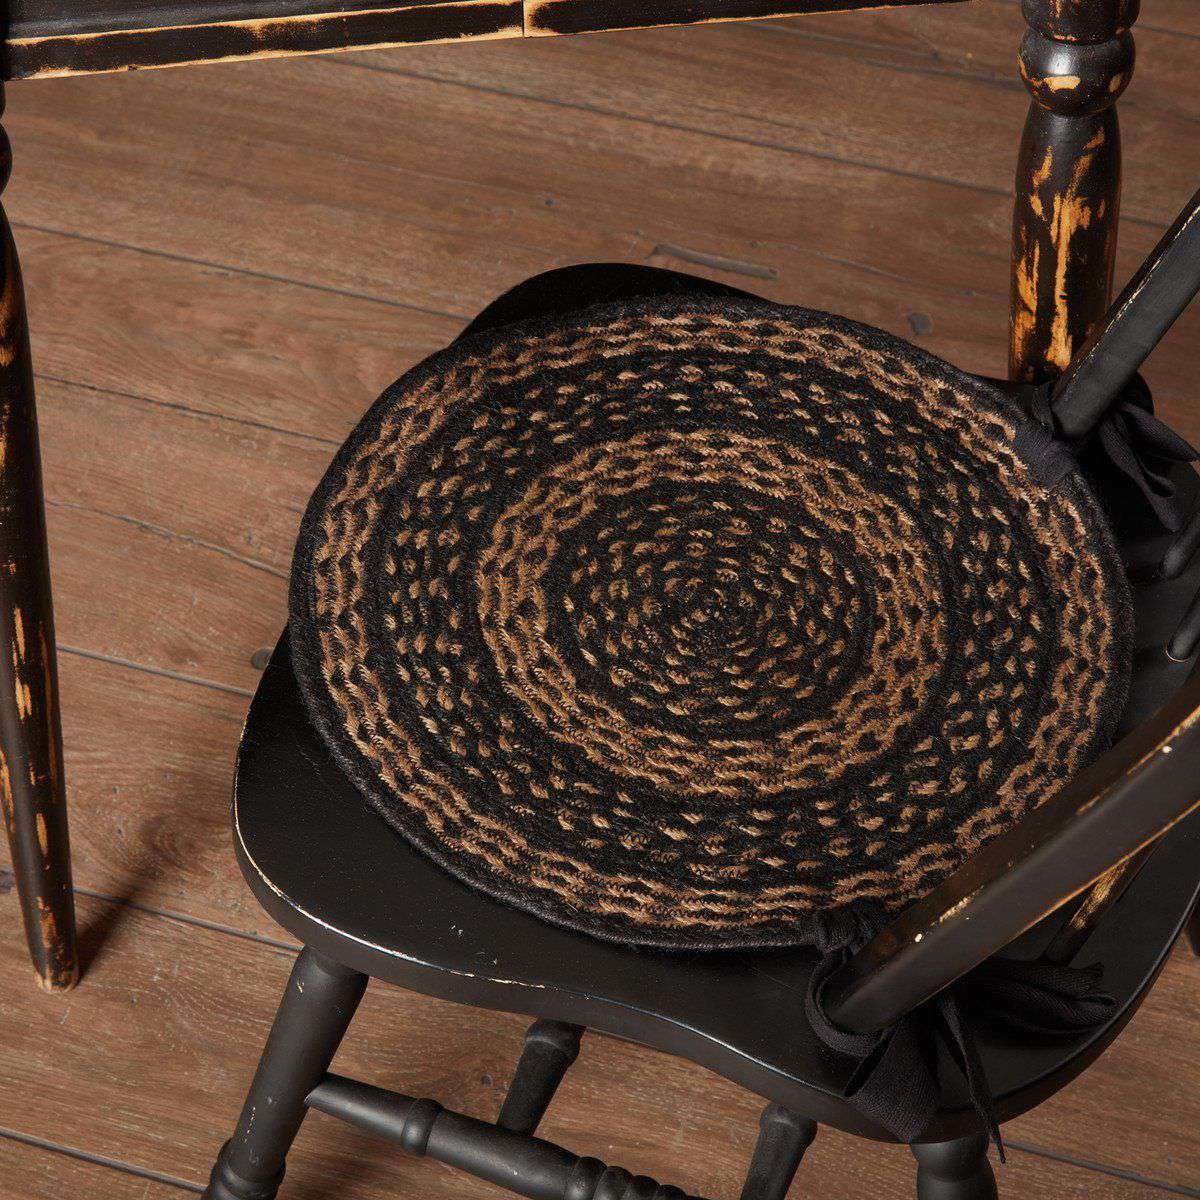 Farmhouse Jute Braided Chair Pad Set of 6 Black & Tan Chair Pad VHC Brands 